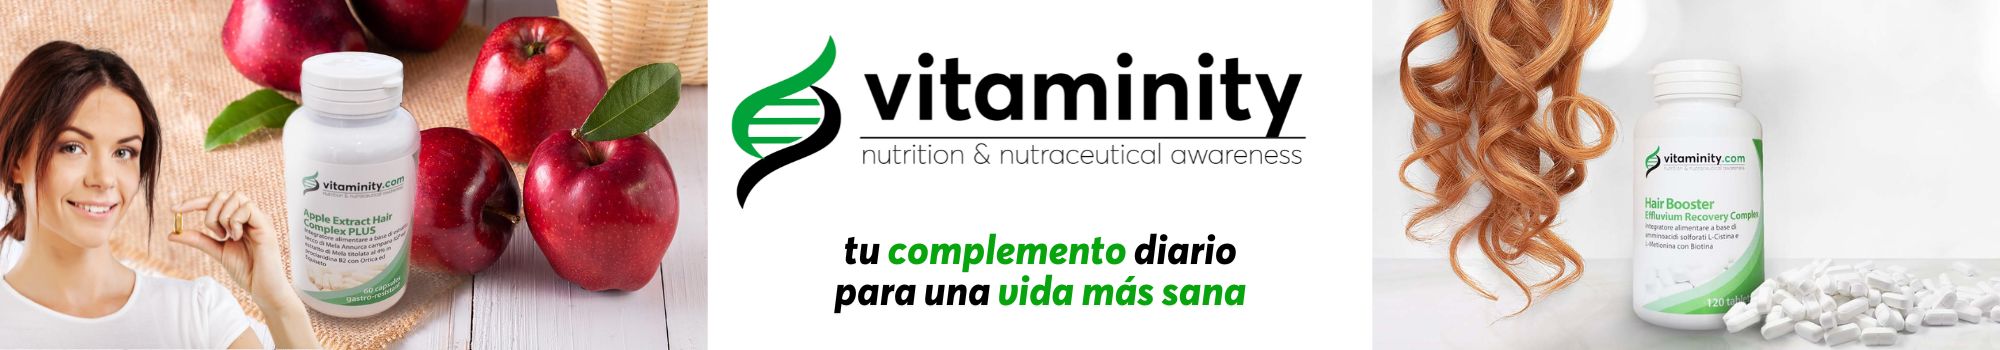 vitaminity-complementos-alimenticios